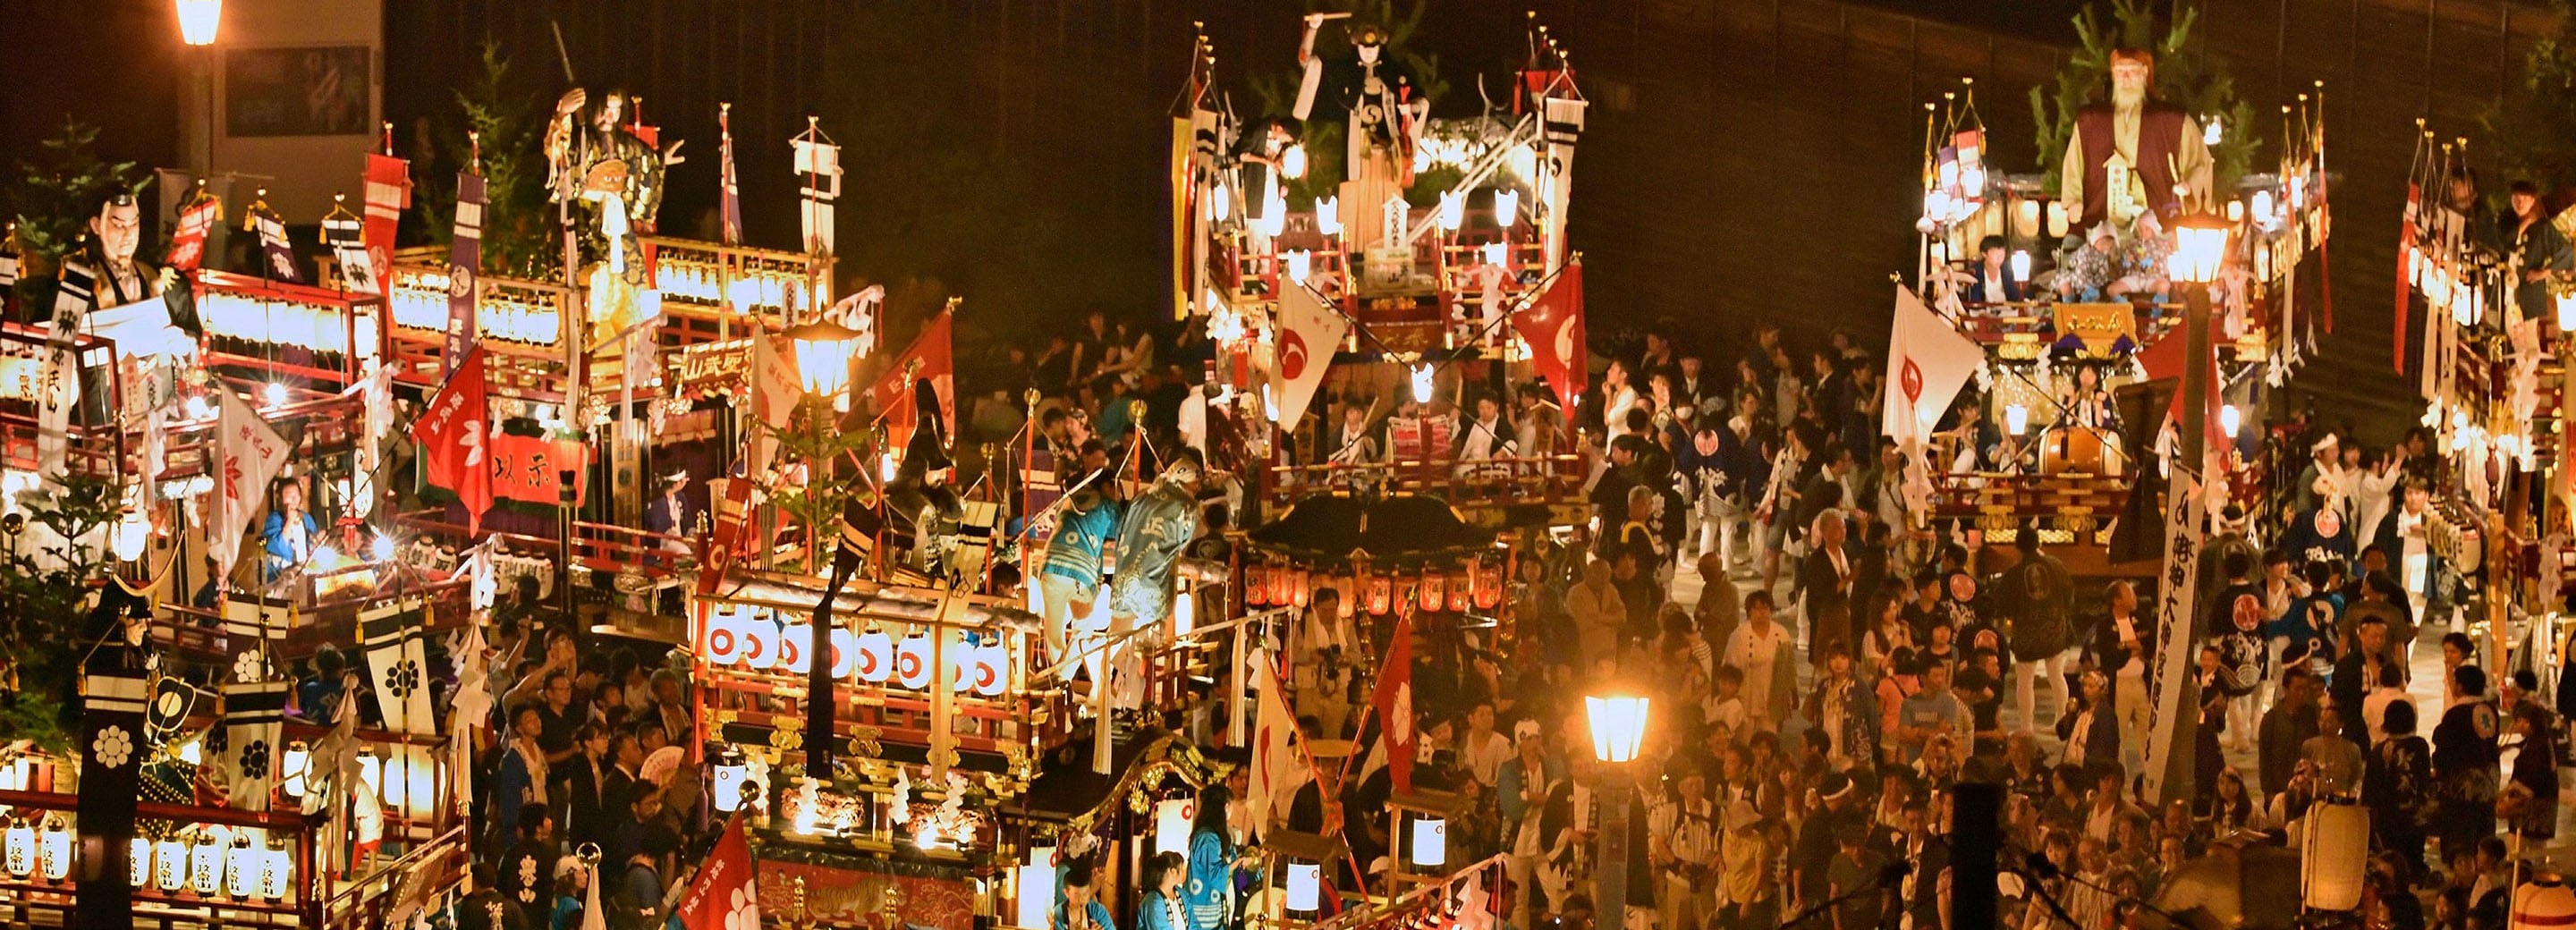 北海道無形民俗文化財「江差・姥神大神宮渡御祭」観光客に向けてIoTで練り歩く山車 (ヤマ) を追跡